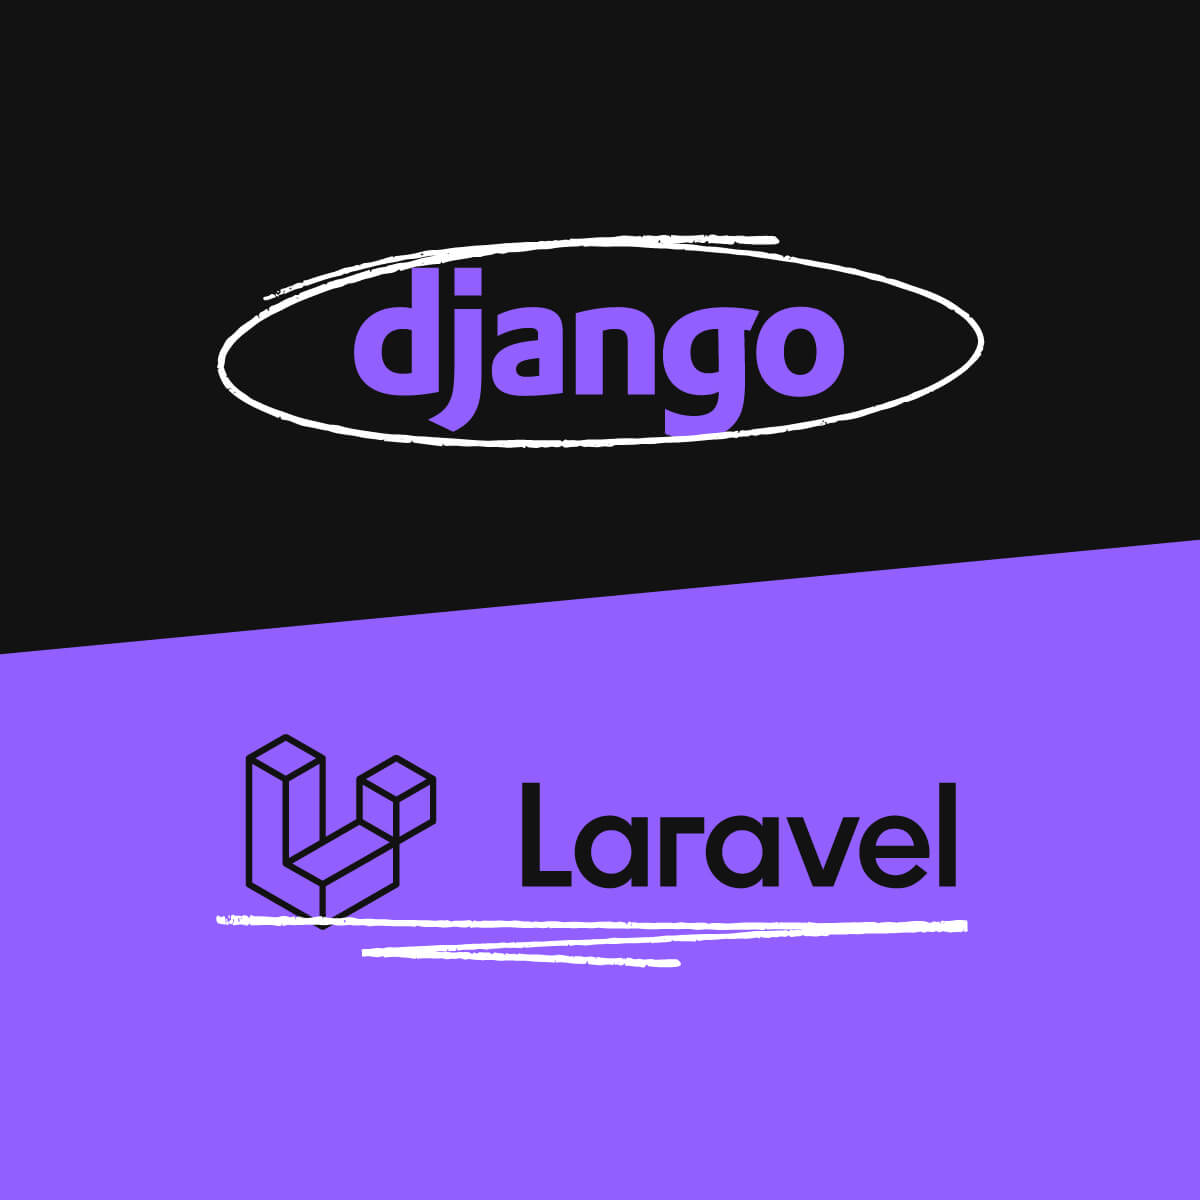 Django_v_Laravel_Tips_1200x1200px-01